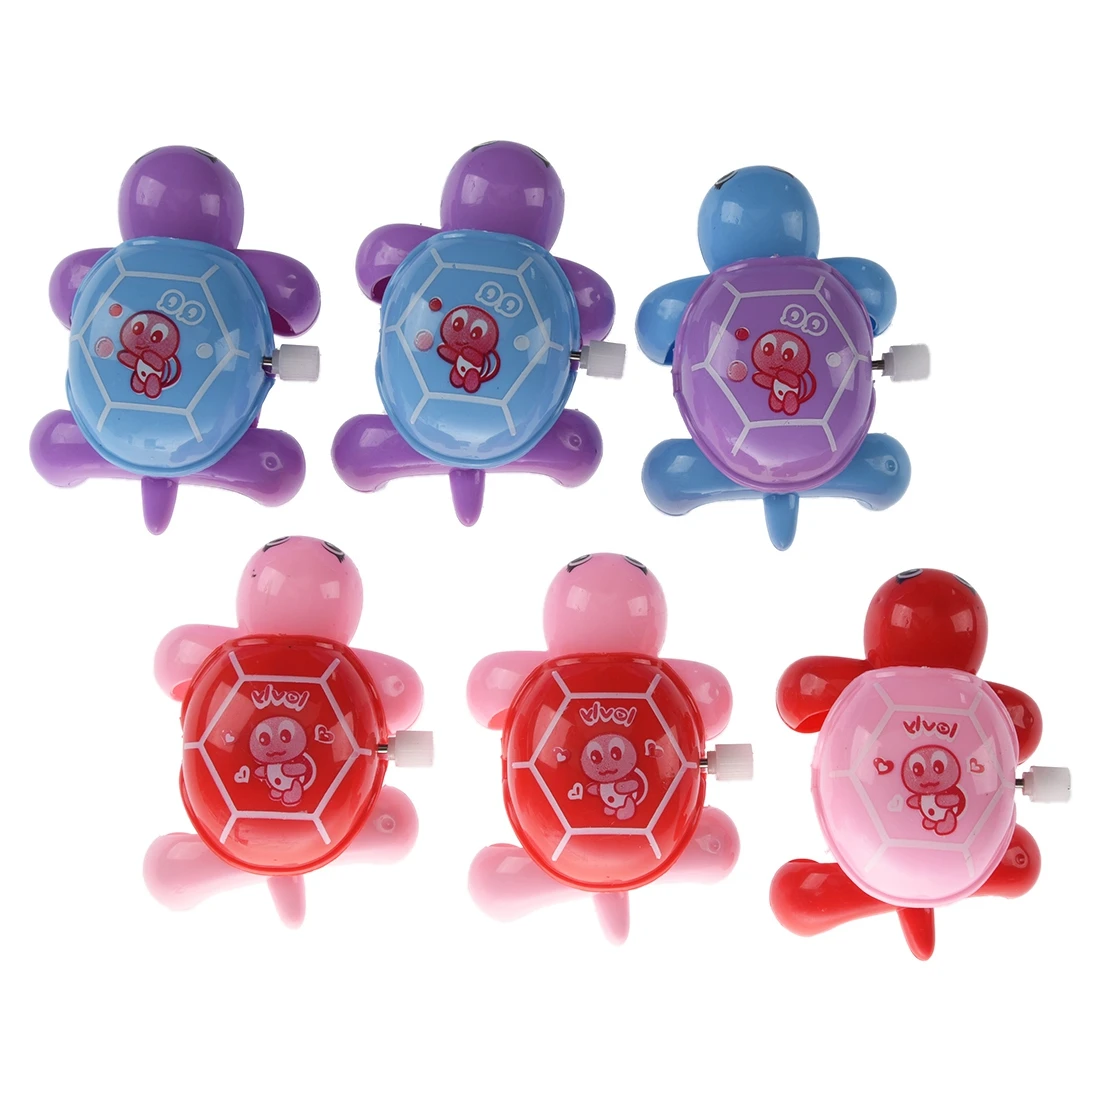 Новые 6 шт. практичные в ассортименте; цветные, пластиковые заводные черепахи игрушки для детей